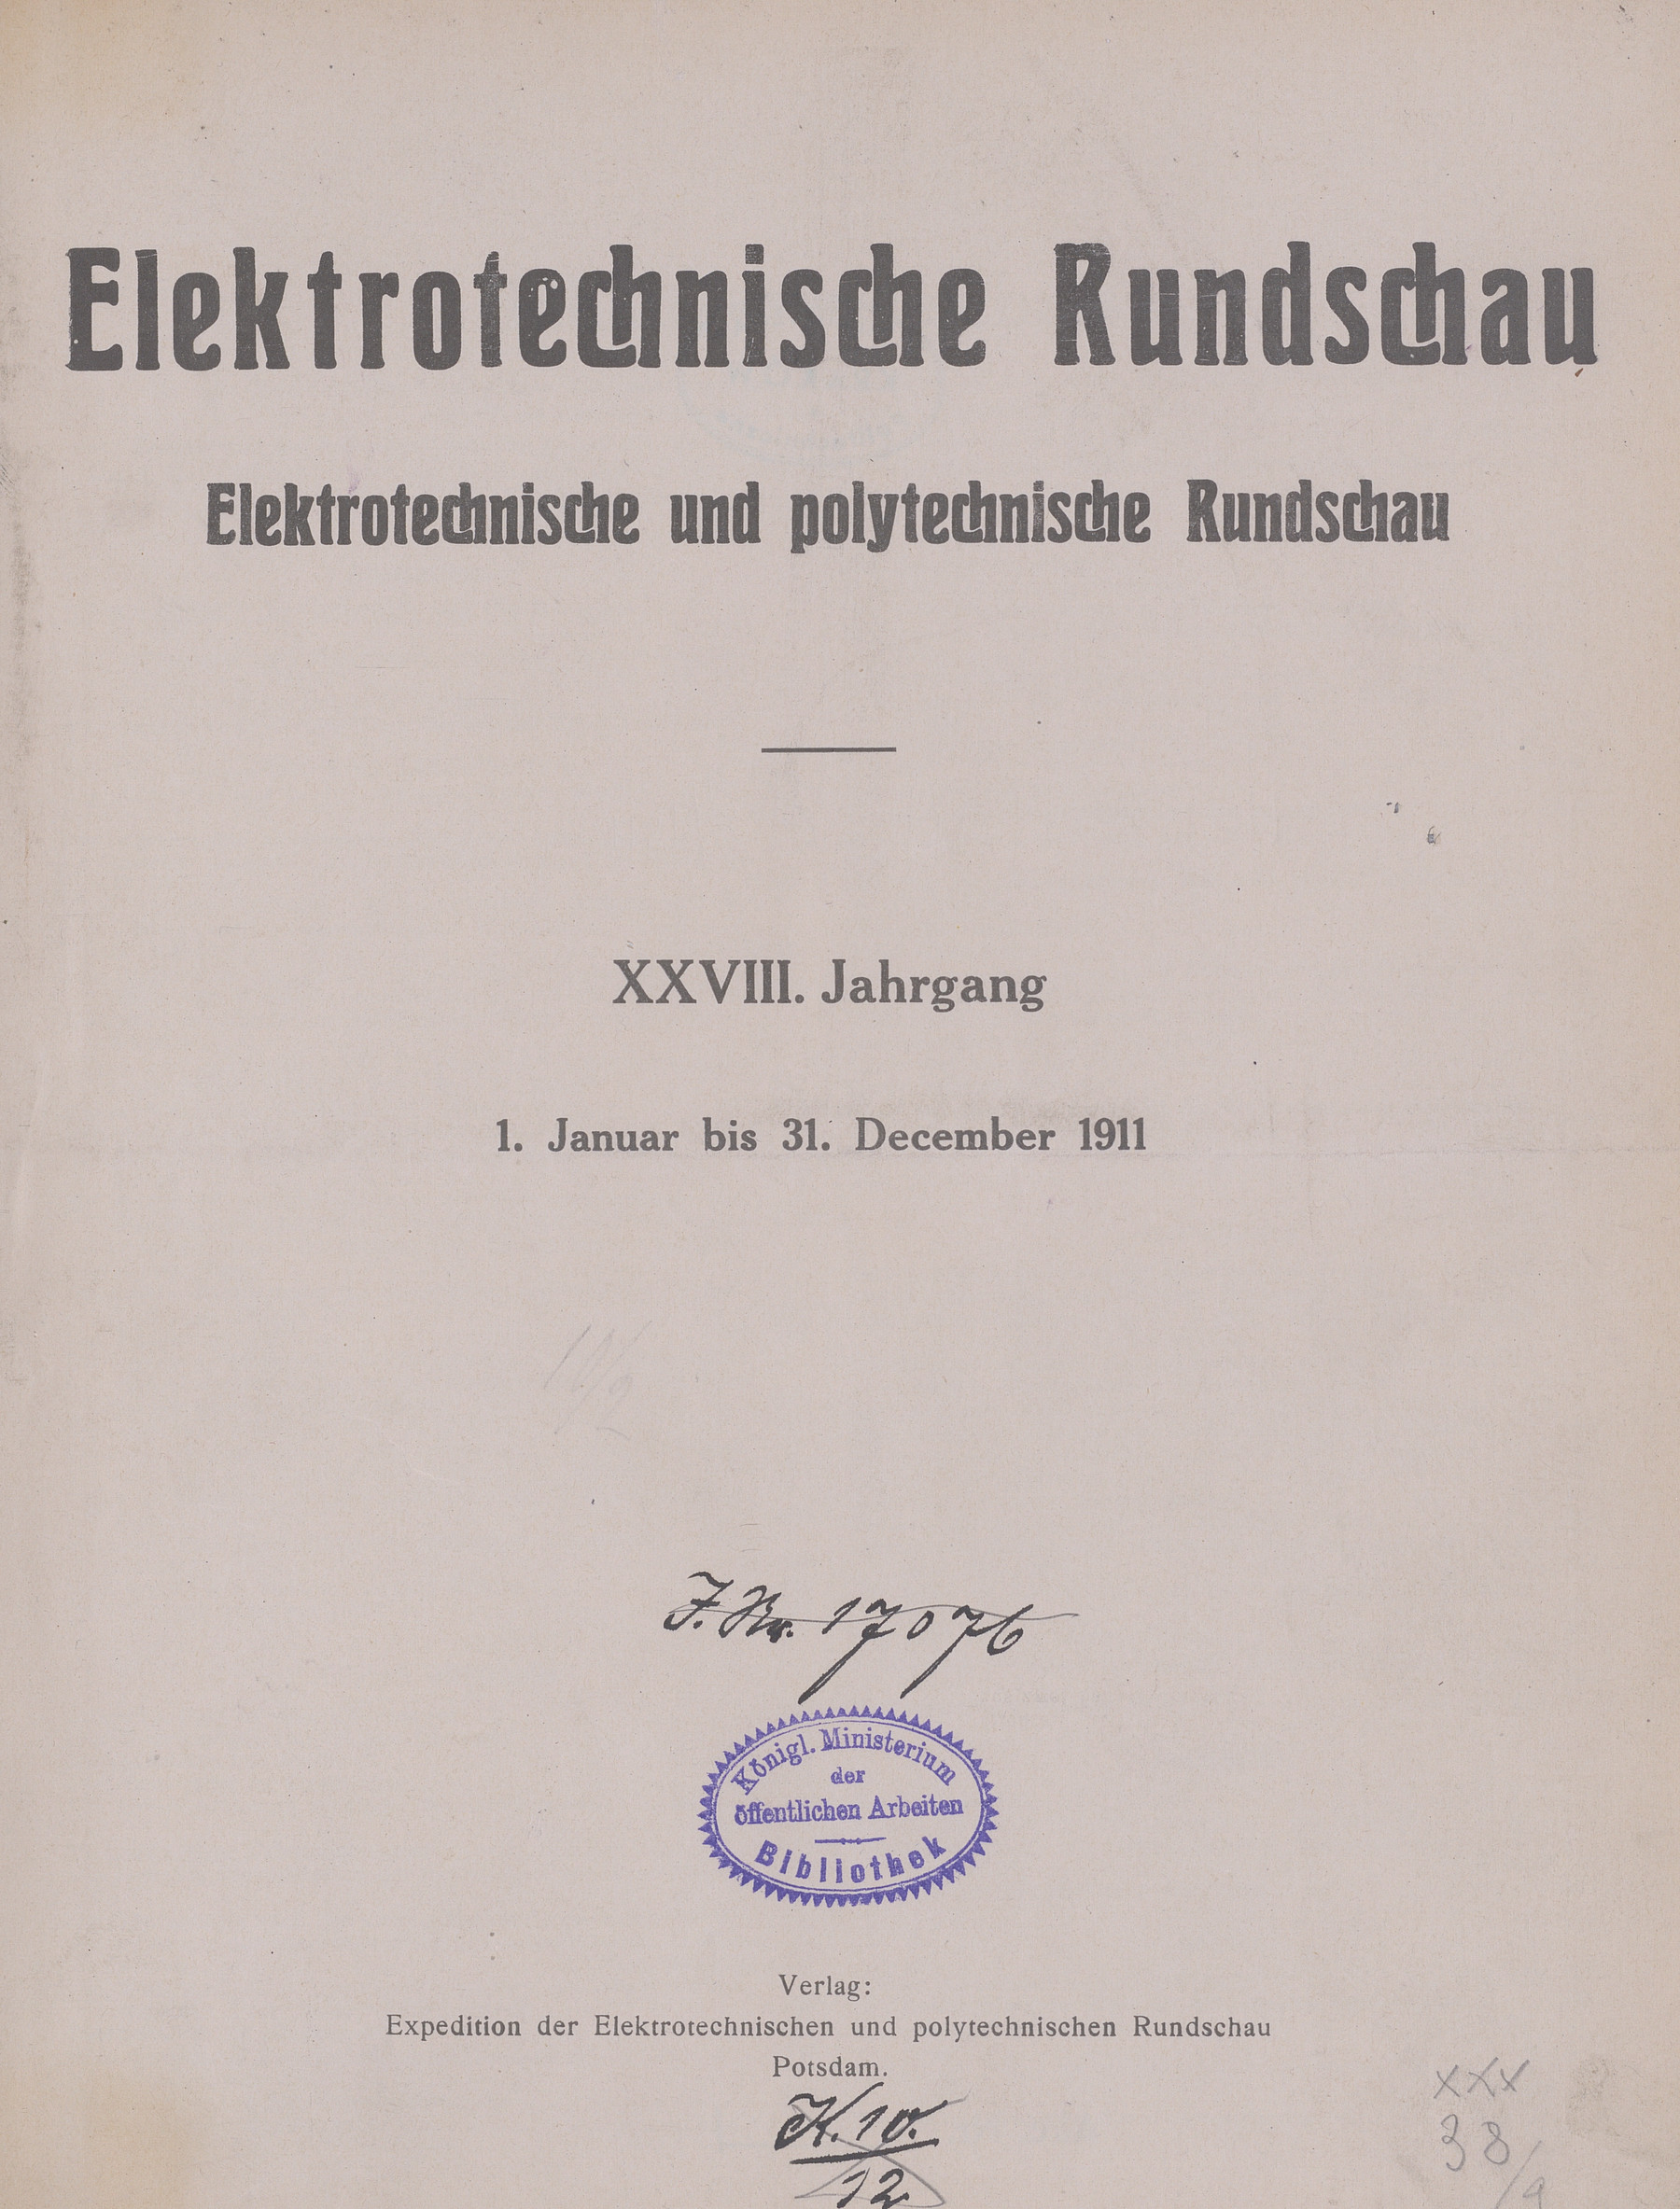 Elektrotechnische Rundschau : Elektrotechnische und polytechnische Rundschau, 1911, Index